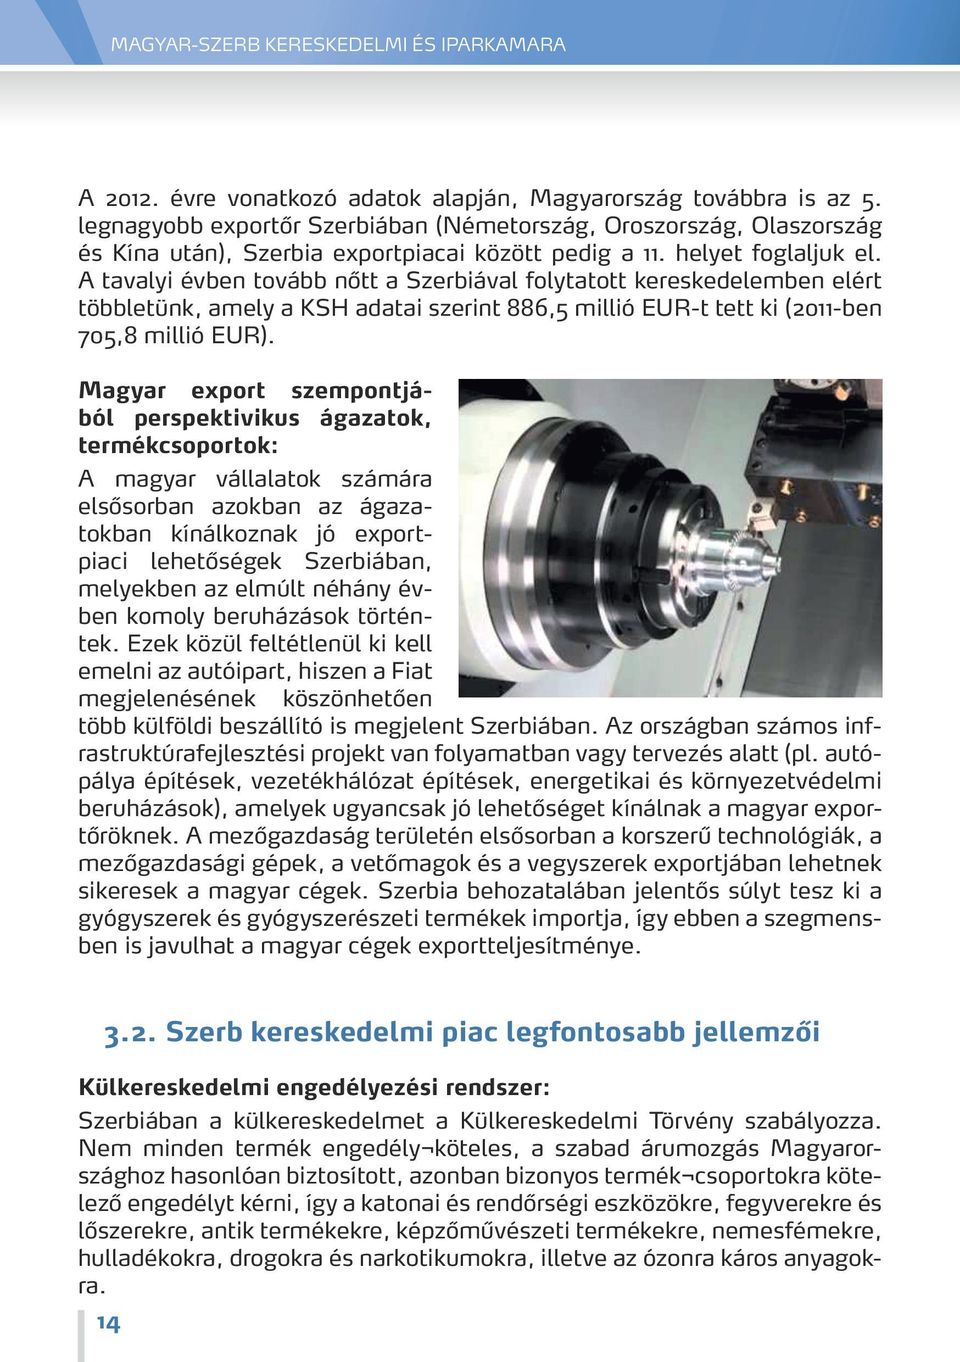 Magyar export szempontjából perspektivikus ágazatok, termékcsoportok: A magyar vállalatok számára elsősorban azokban az ágazatokban kínálkoznak jó exportpiaci lehetőségek Szerbiában, melyekben az